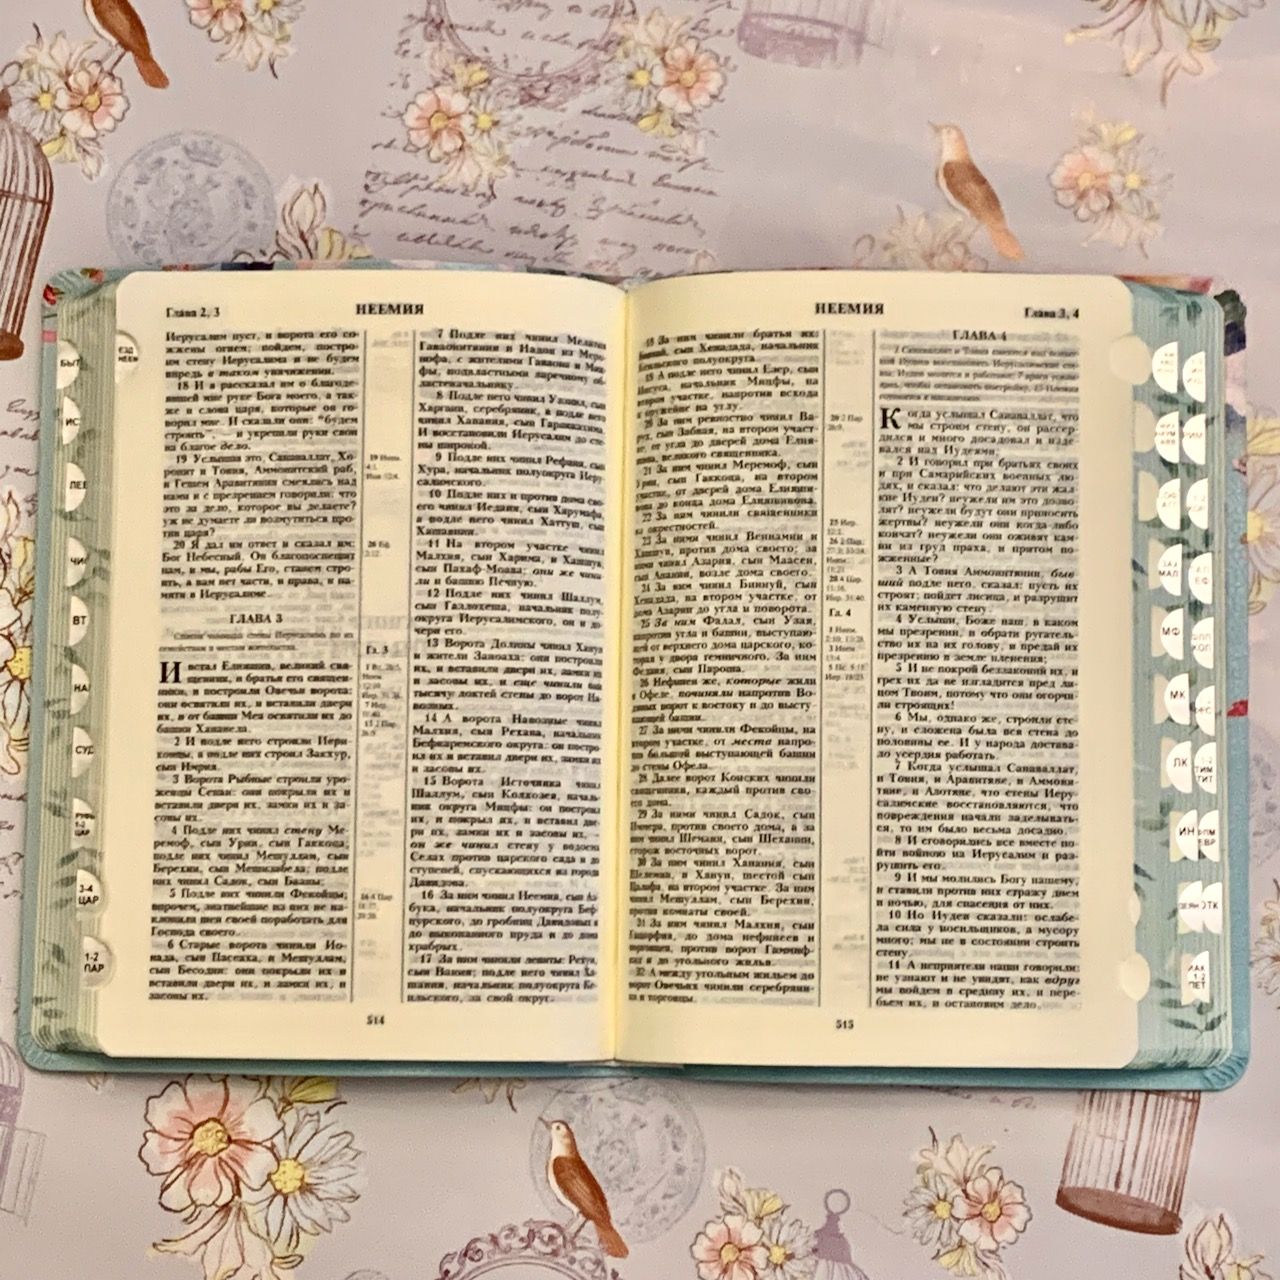 Библия 055 ti код 11551 переплет из эко кожи , бирюзовая с изображением цветов и надпись "Библия", средний формат, 145*205 мм, парал. места по центру страницы, кремовые страницы, цветочный обрез, индексы,  крупный шрифт